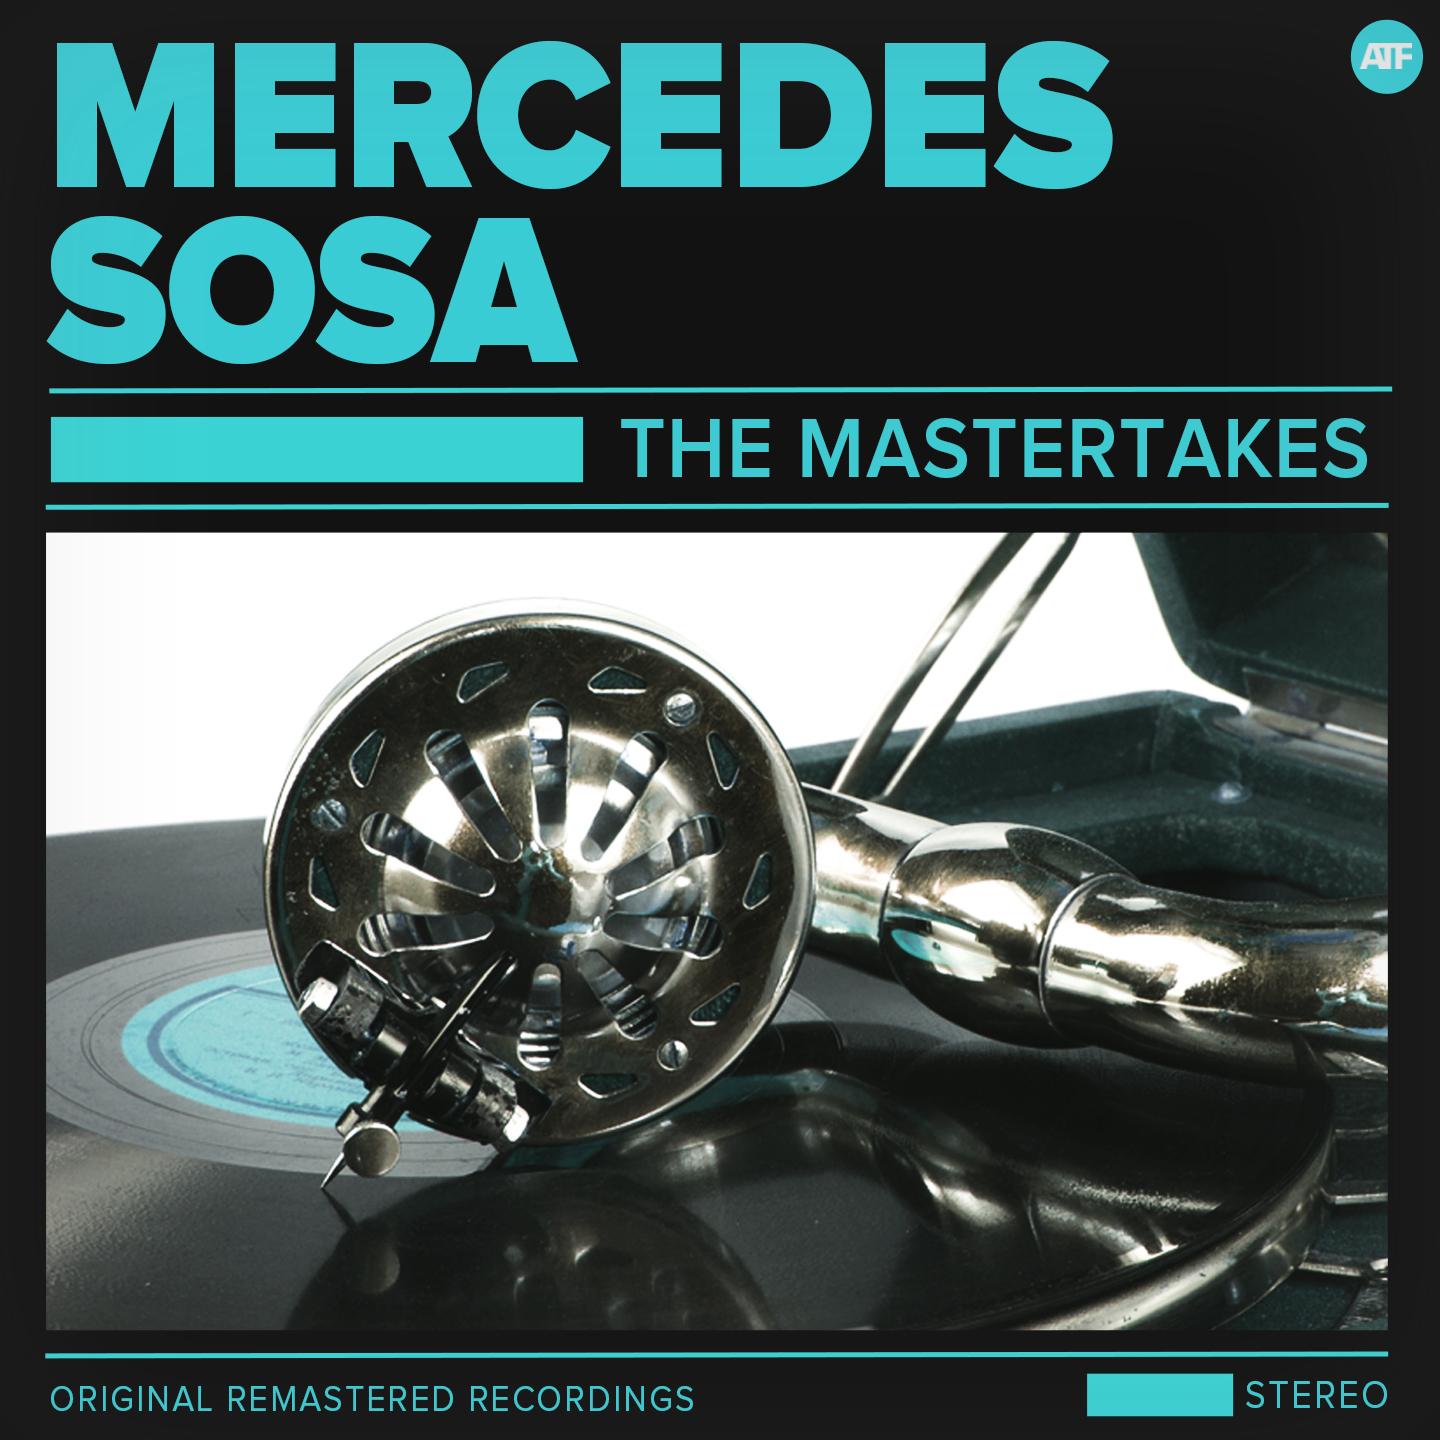 The Mercedes Sosa Mastertakes